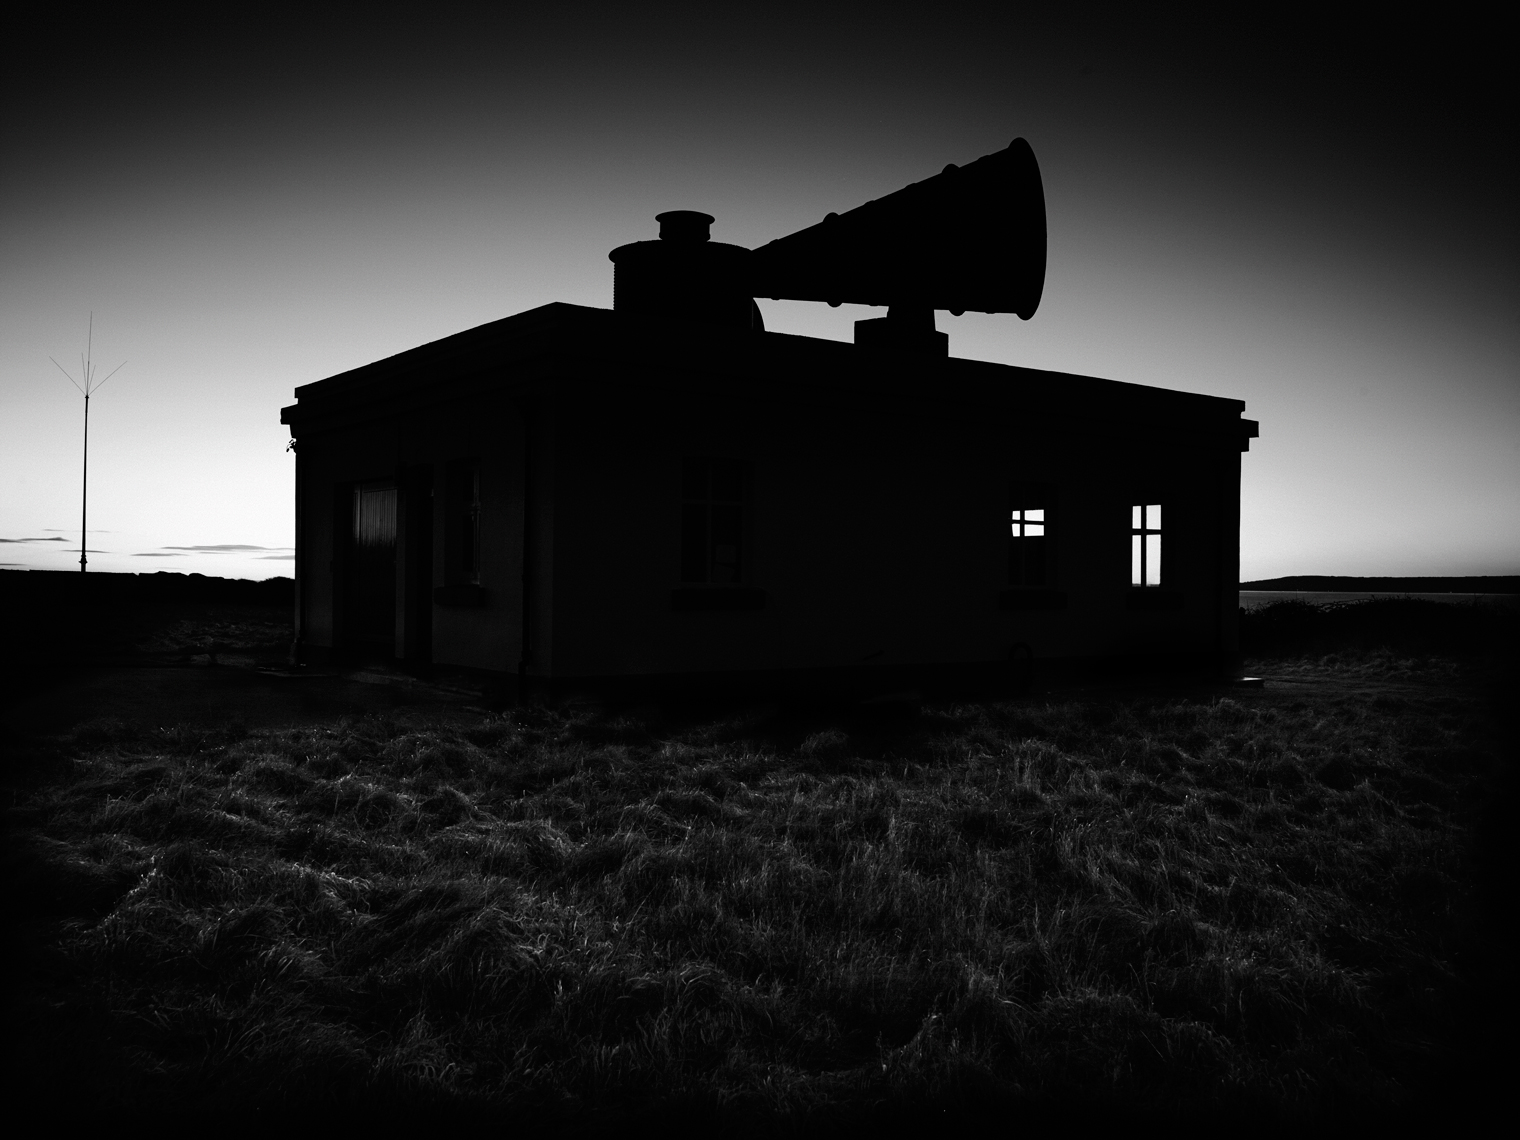 Jon Wyatt Photography - Fog Signal Horn at Nash Point Lighthouse, South Wales